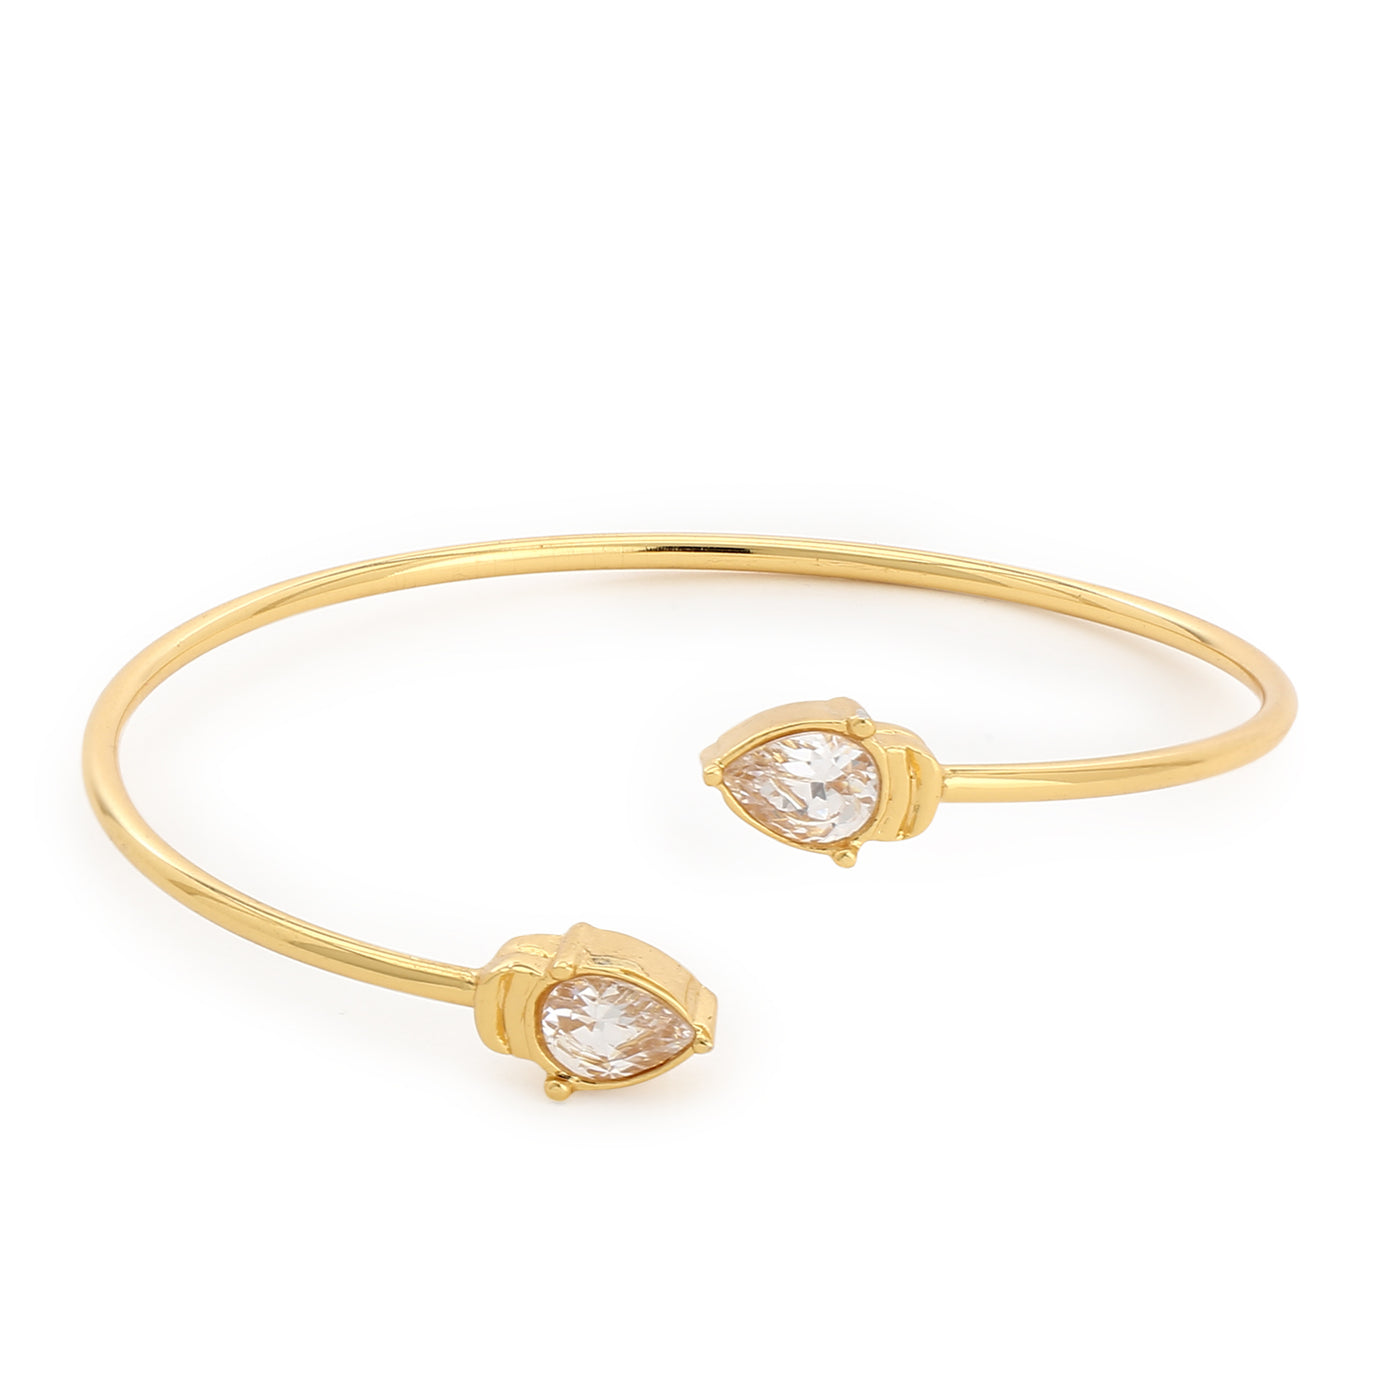 Estele gold plated White Stone Bracelet for women